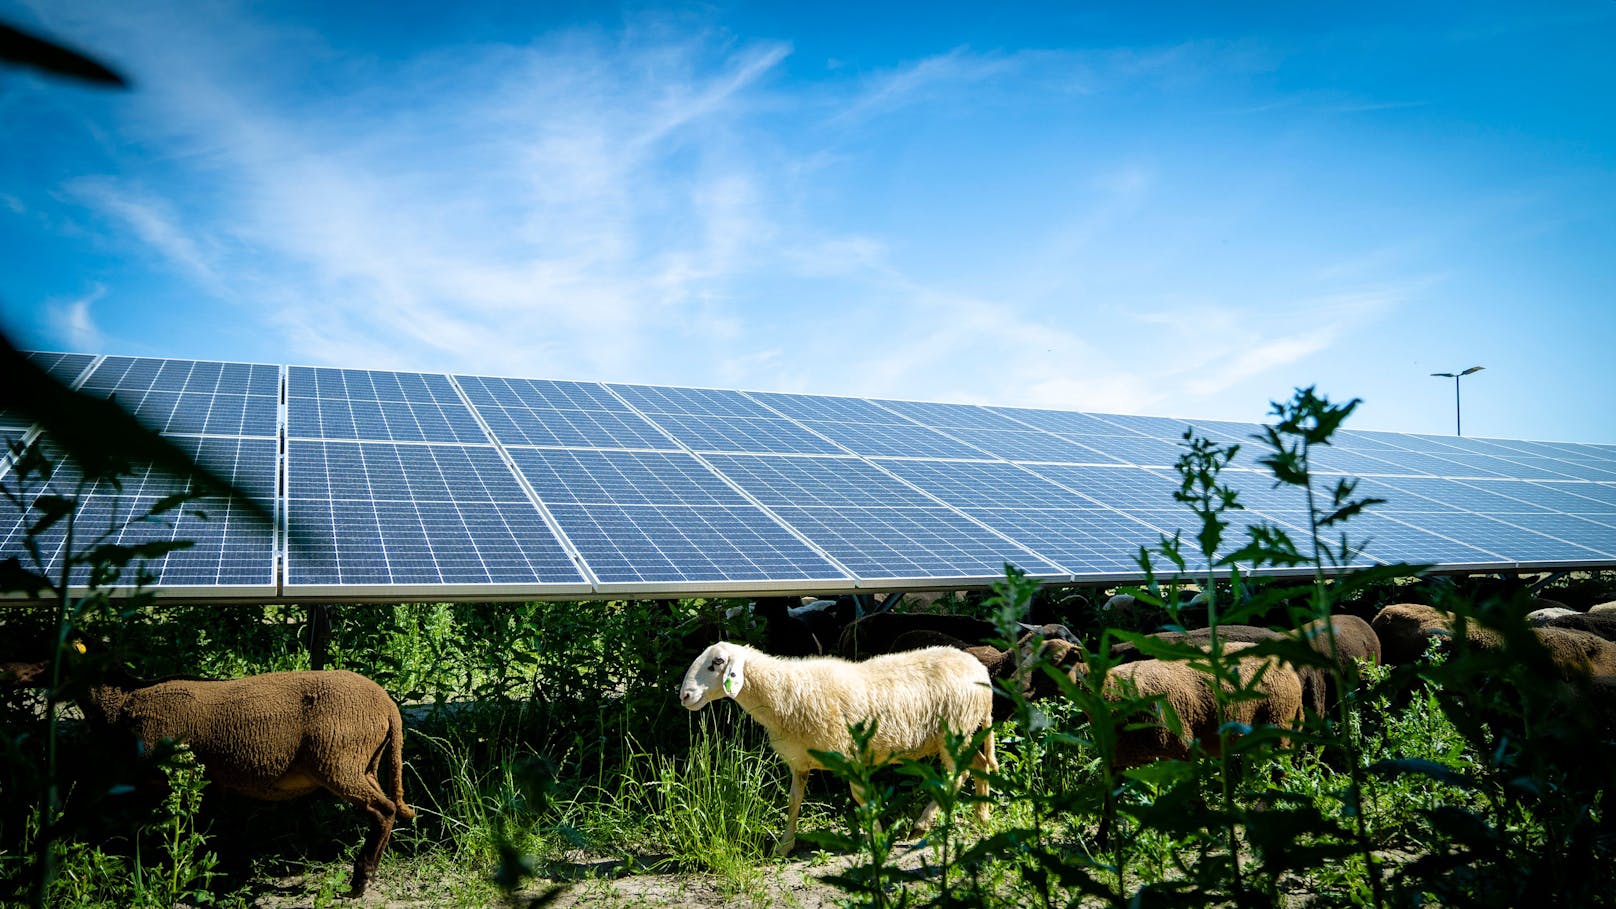 Bis 2040 soll Wien klimaneutral werden. Dazu setzt die Stadt auf den Ausbau der Photovoltaik. Etwa mit dem neuen Solarkraftwerk in der Schafflerhofstraße (Donaustadt). Das Areal wird gleich mehrfach genutzt: Zwischen den Modulen grasen Schafe als natürliche Rasenmäher, bei einem Teil der Anlage wird zudem Ackerbau betrieben.